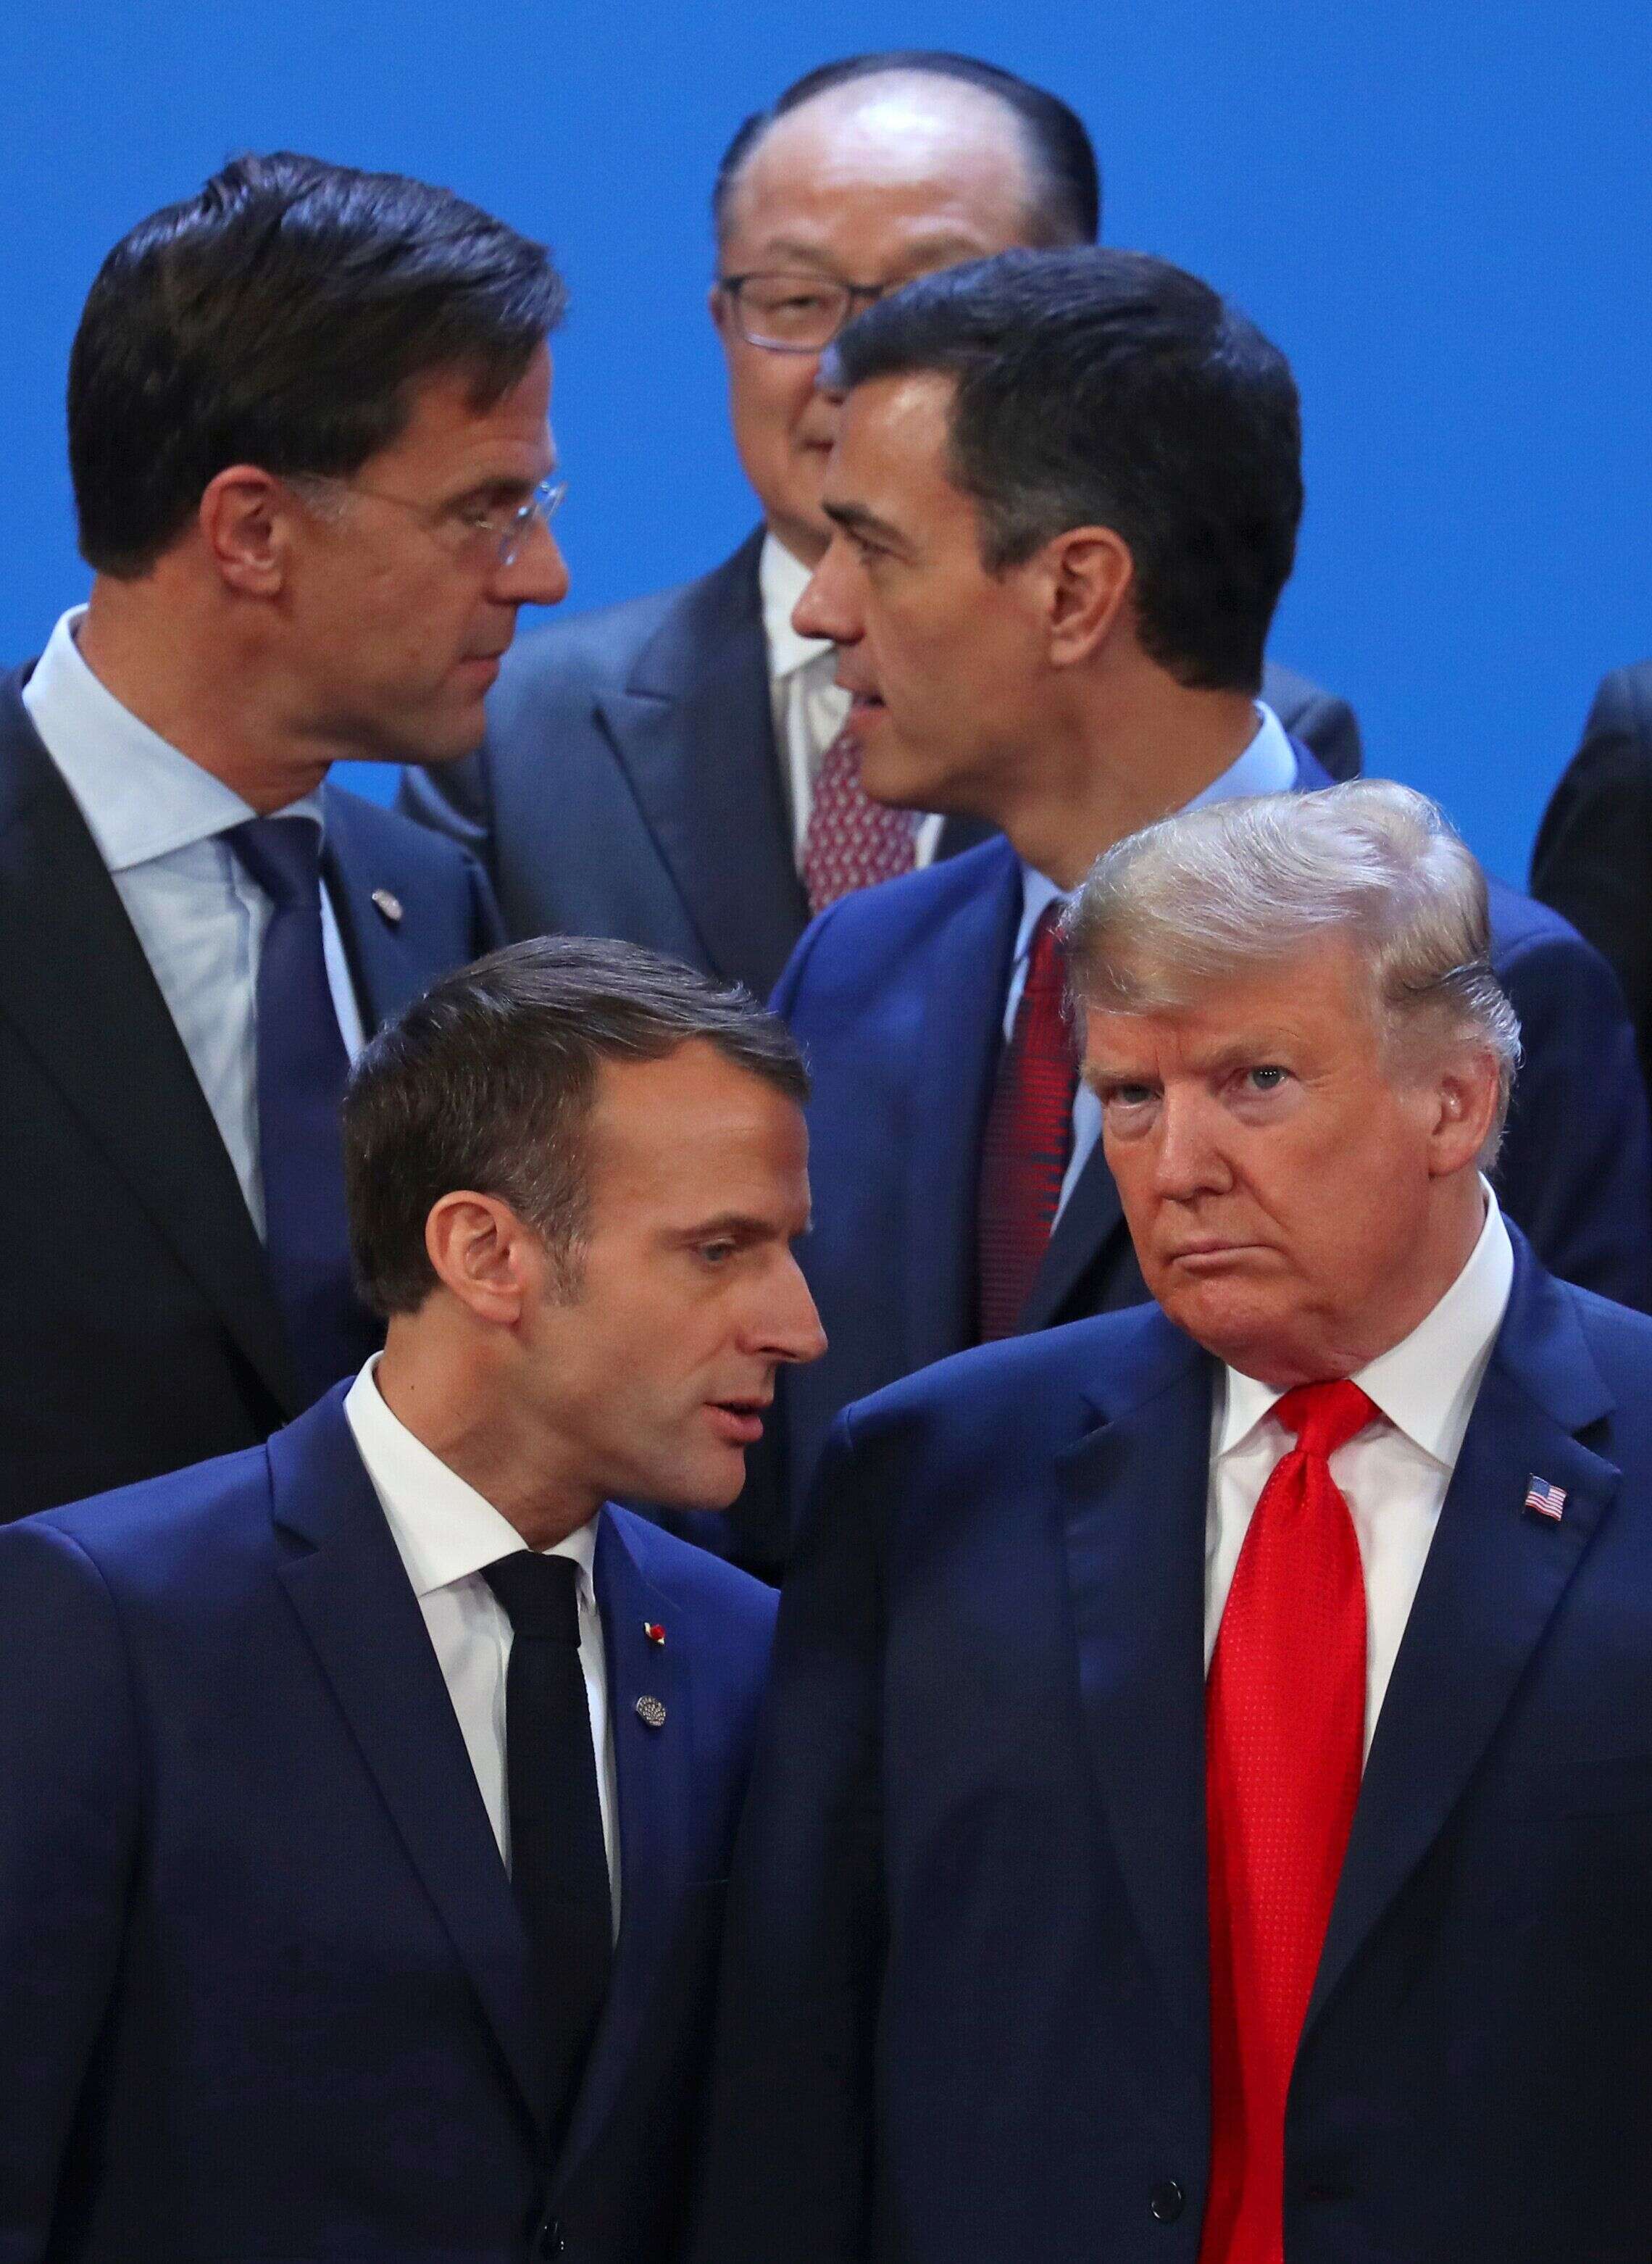 La dernière rencontre entre Emmanuel Macron et Donald Trump a eu lieu en marge du sommet du G20 en Argentine, fin novembre.